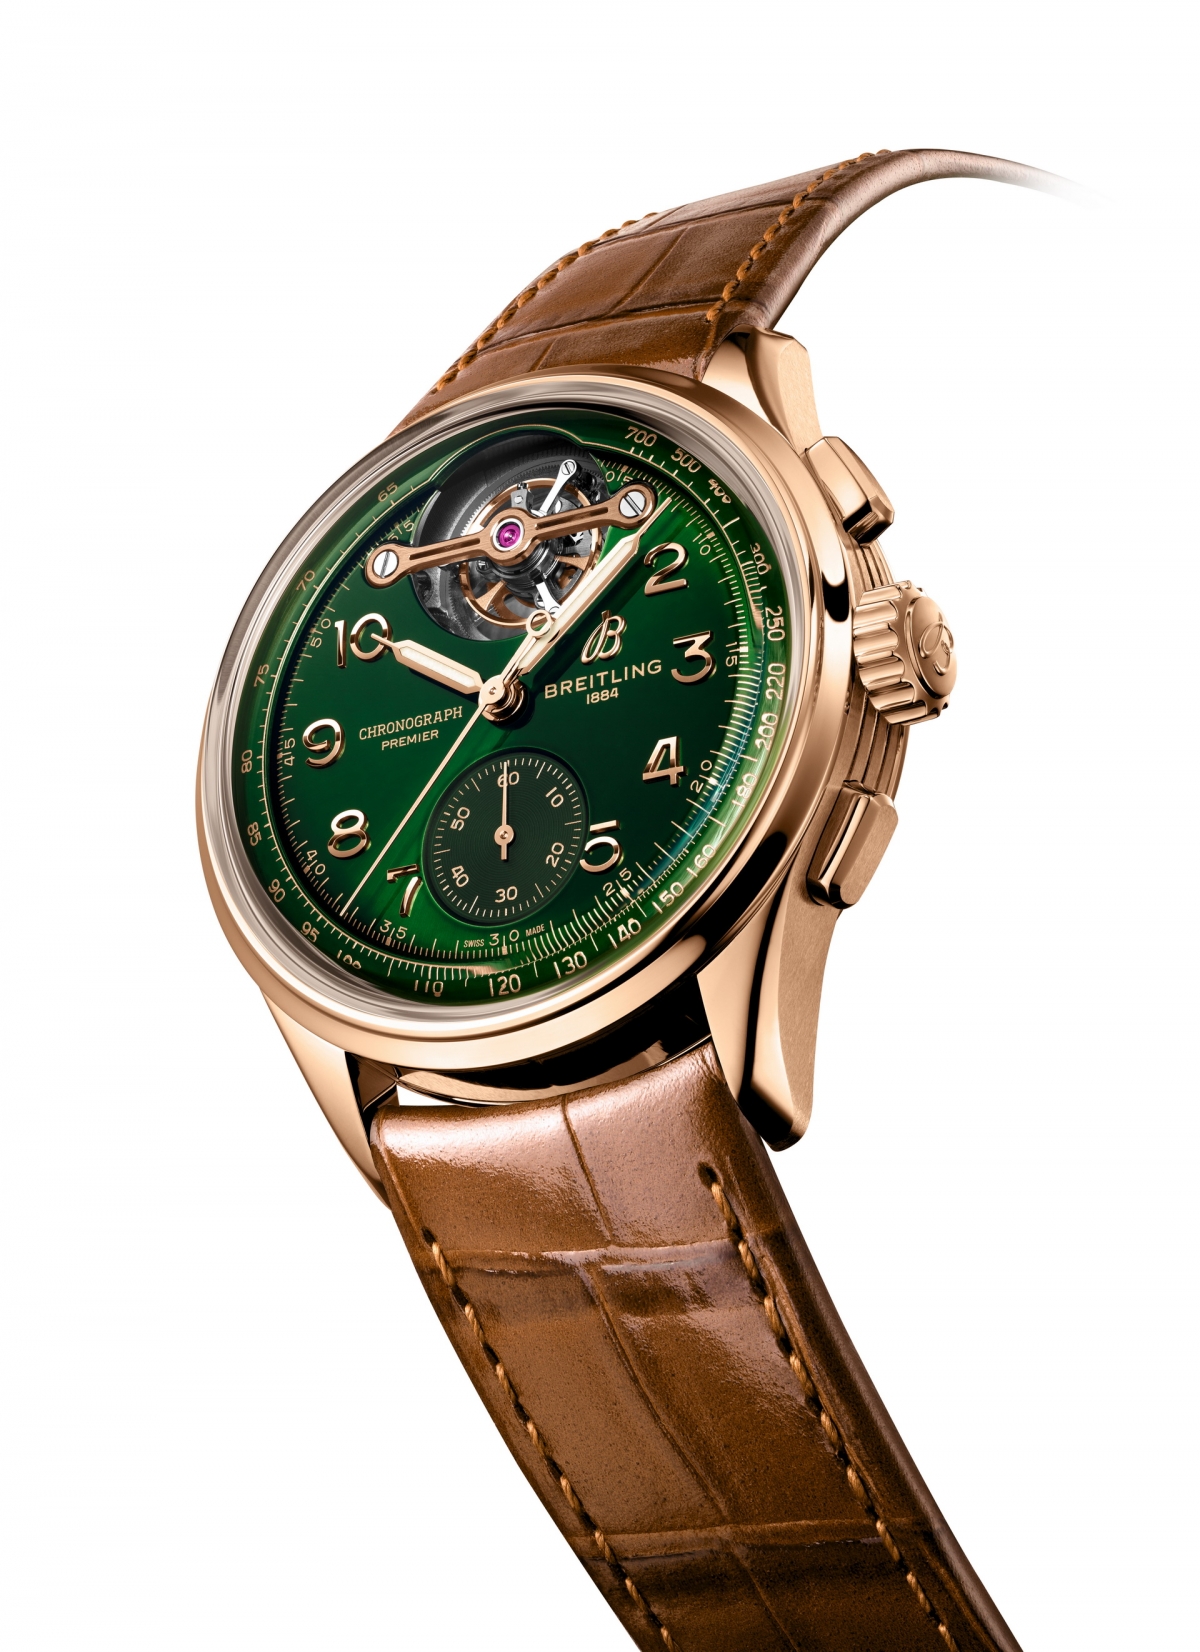 Khám phá đồng hồ Bentley phiên bản giới hạn giá hơn 52.000 USD  - Ảnh 4.